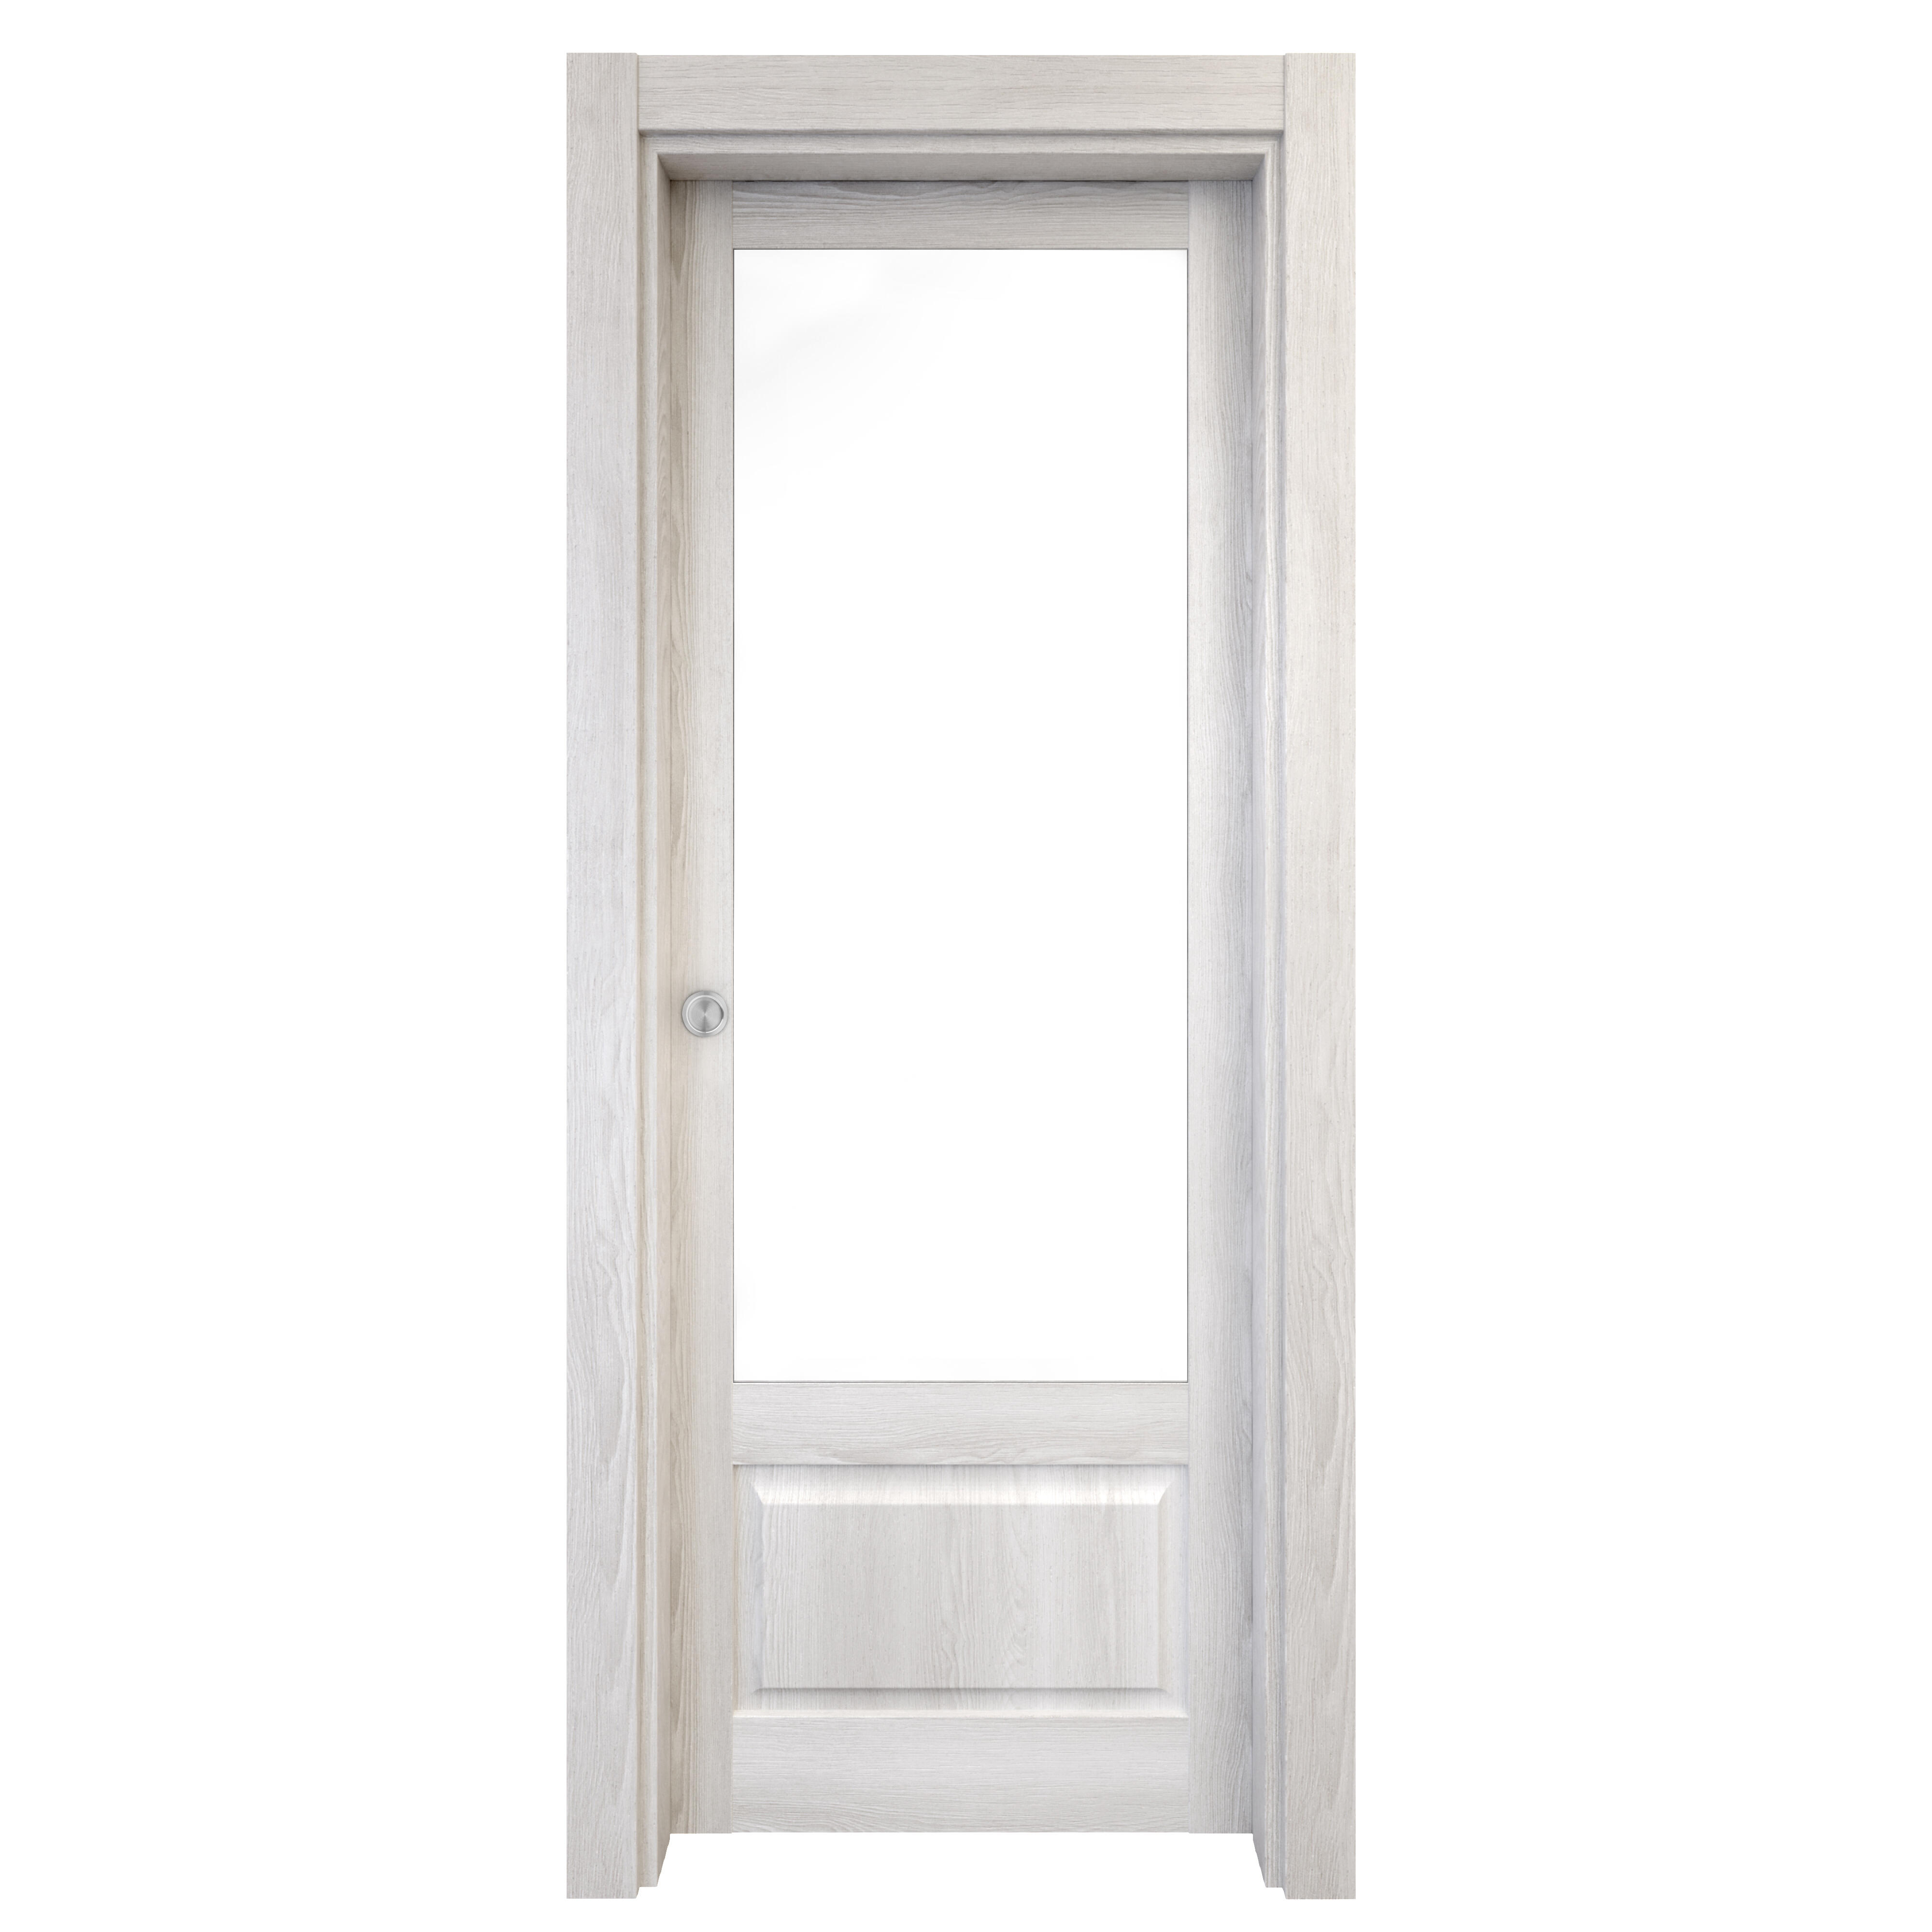 Puerta corredera sofia blanca line plus blanco con cristal de 82.5x203cm